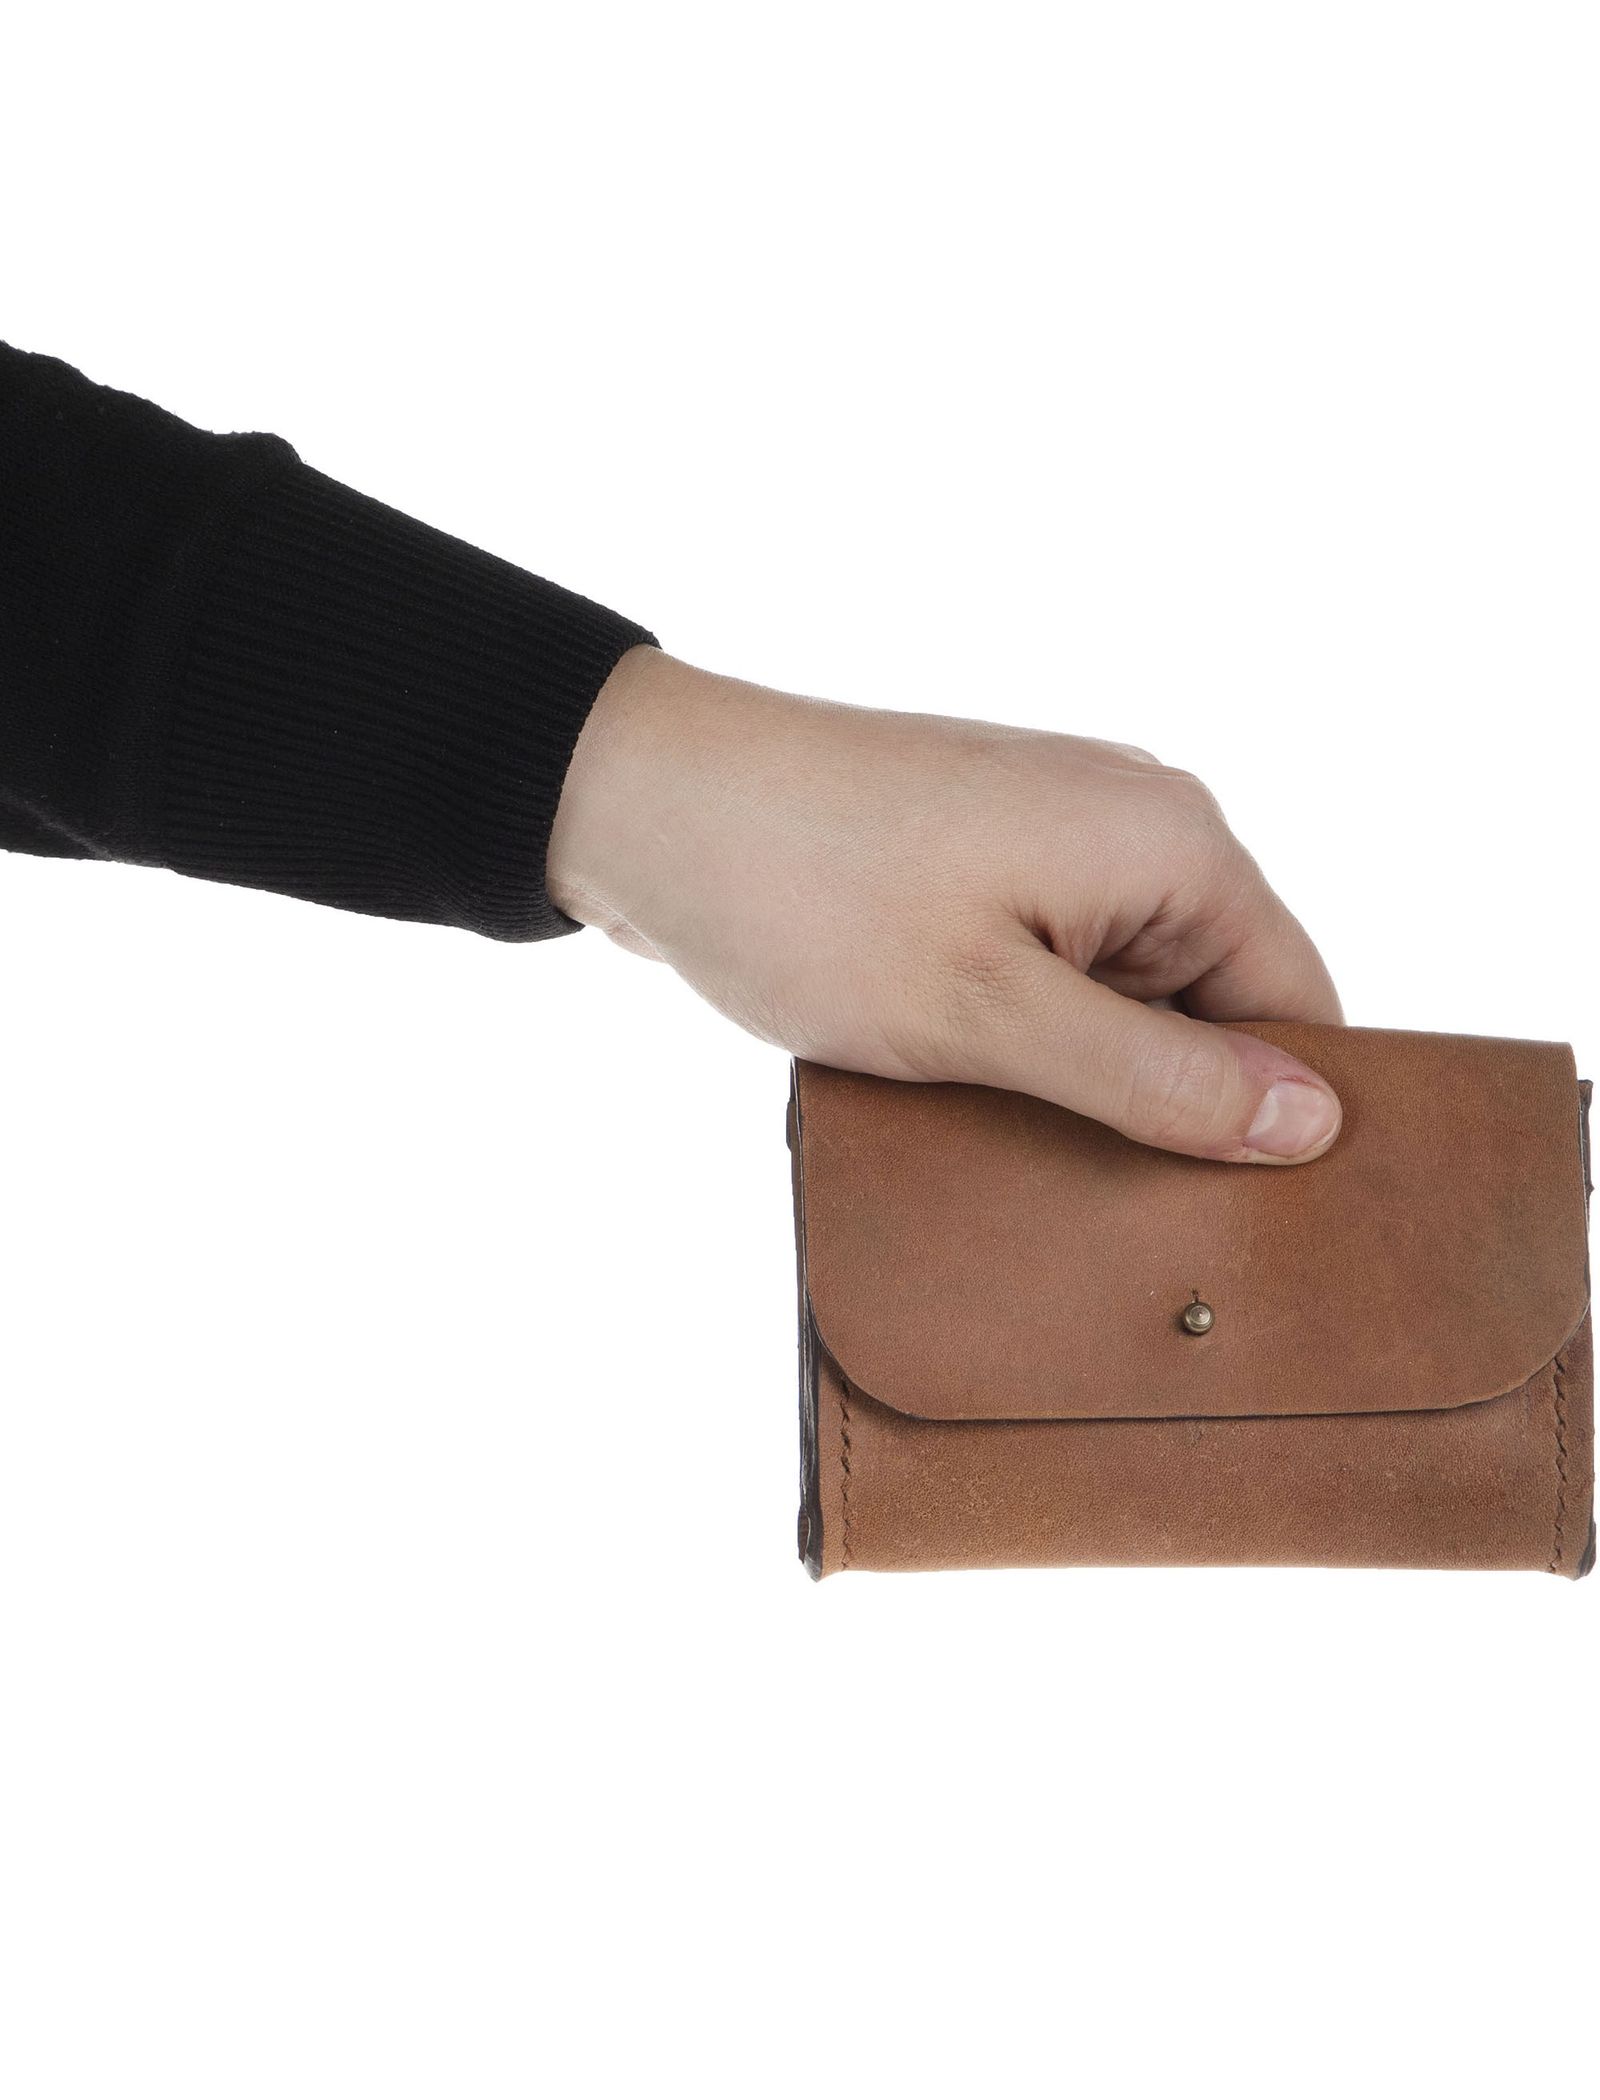 کیف کارت اعتباری چرم بزرگسال - چرم لانکا تک سایز - قهوه اي روشن - 6